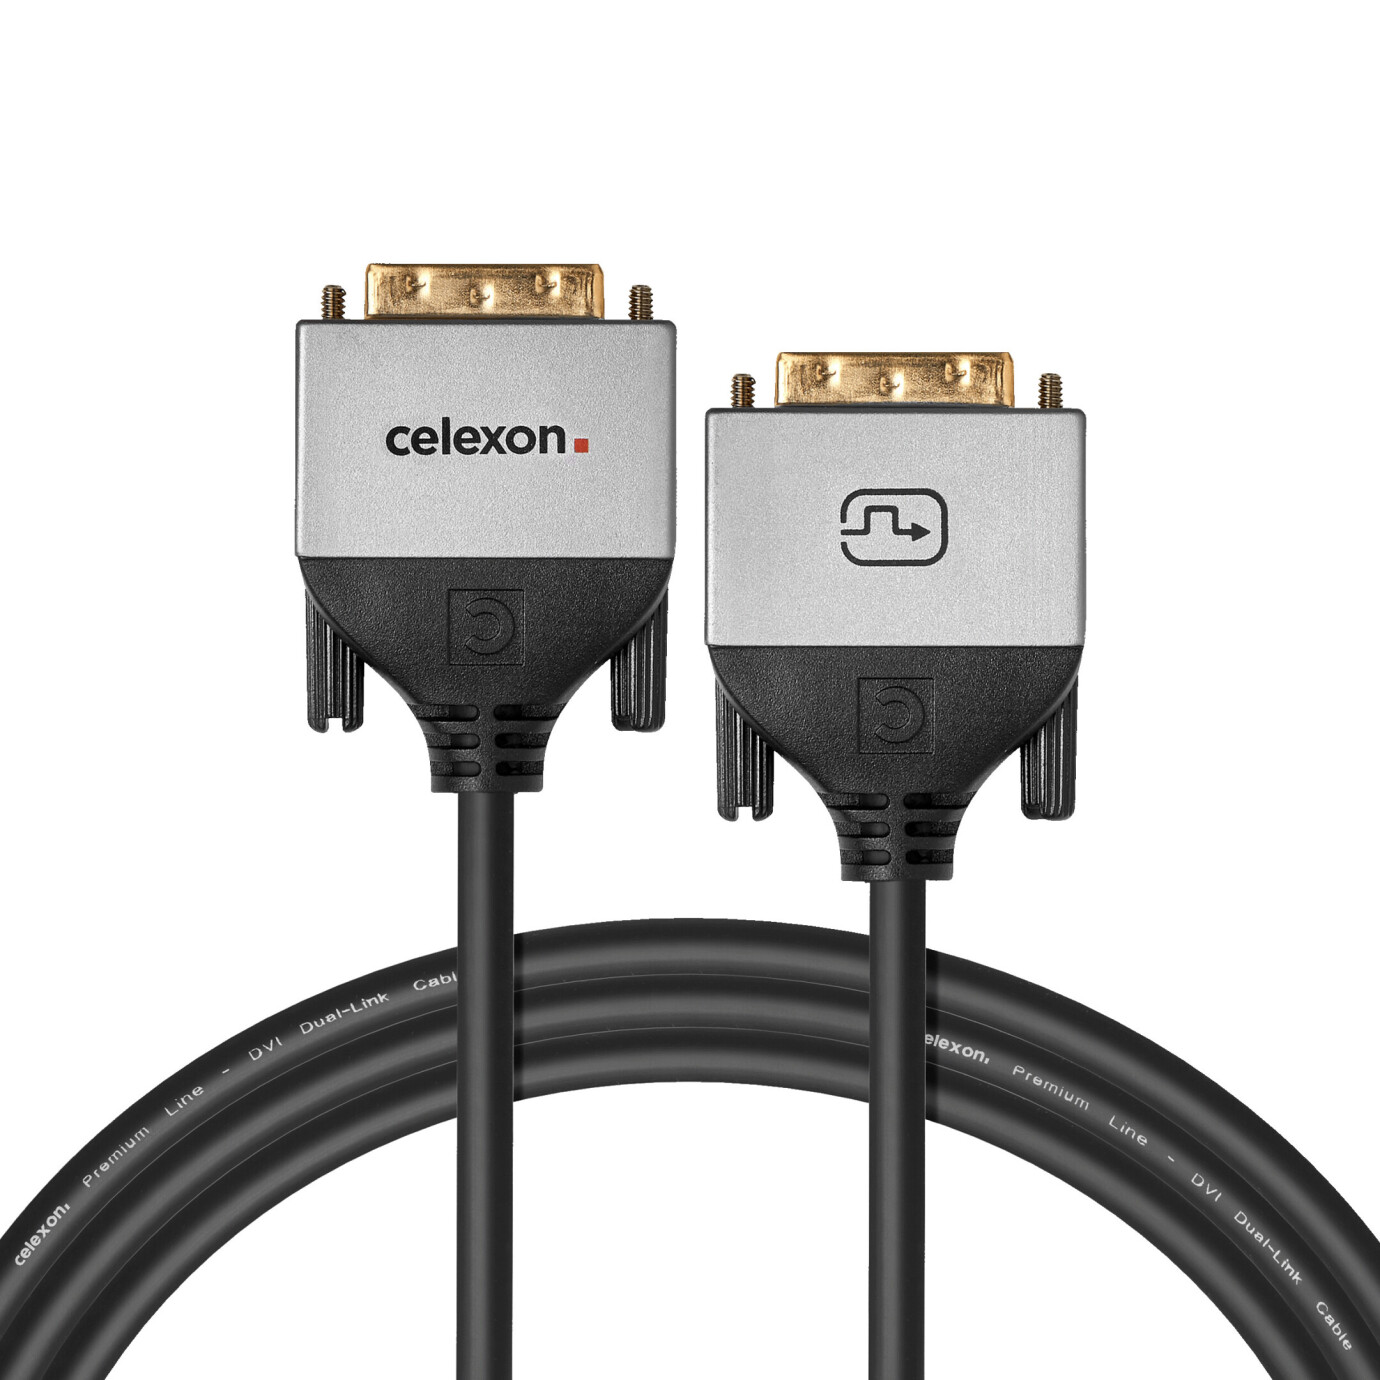 Vorschau: celexon DVI Dual Link Kabel 3,0m - Professional Line